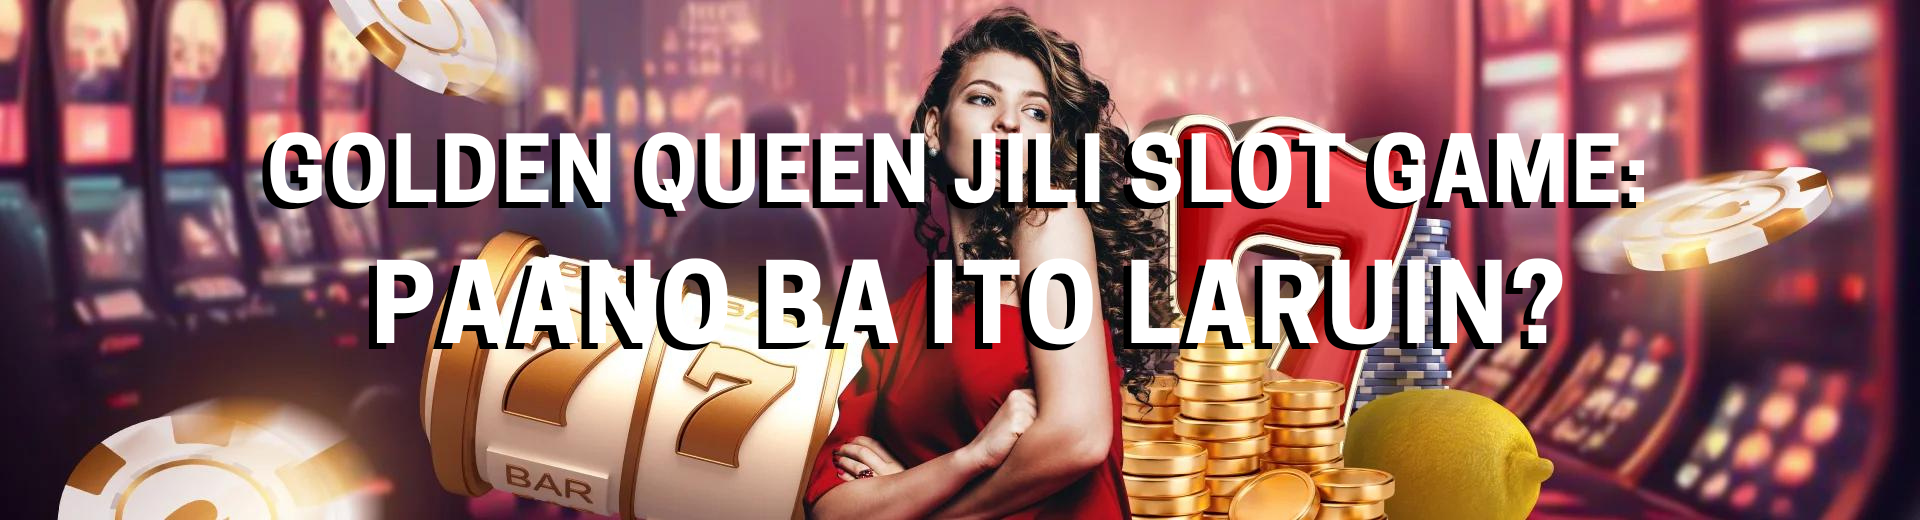 Golden Queen Jili Slot Game: Paano ba ito laruin? | OKBet